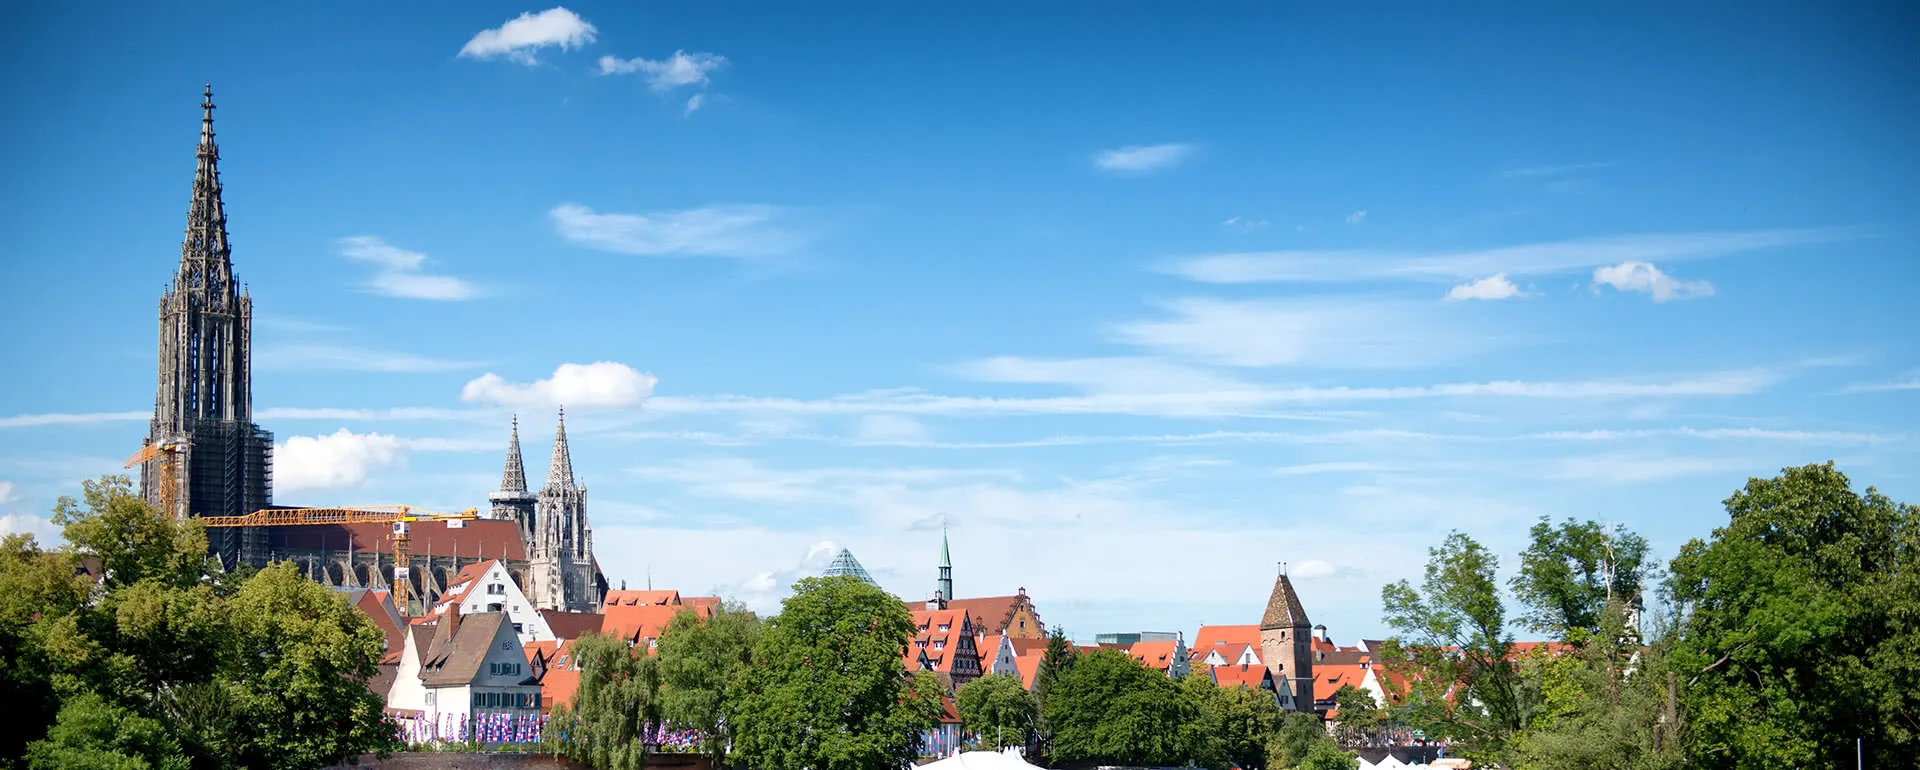 Ulm Panorama Bild